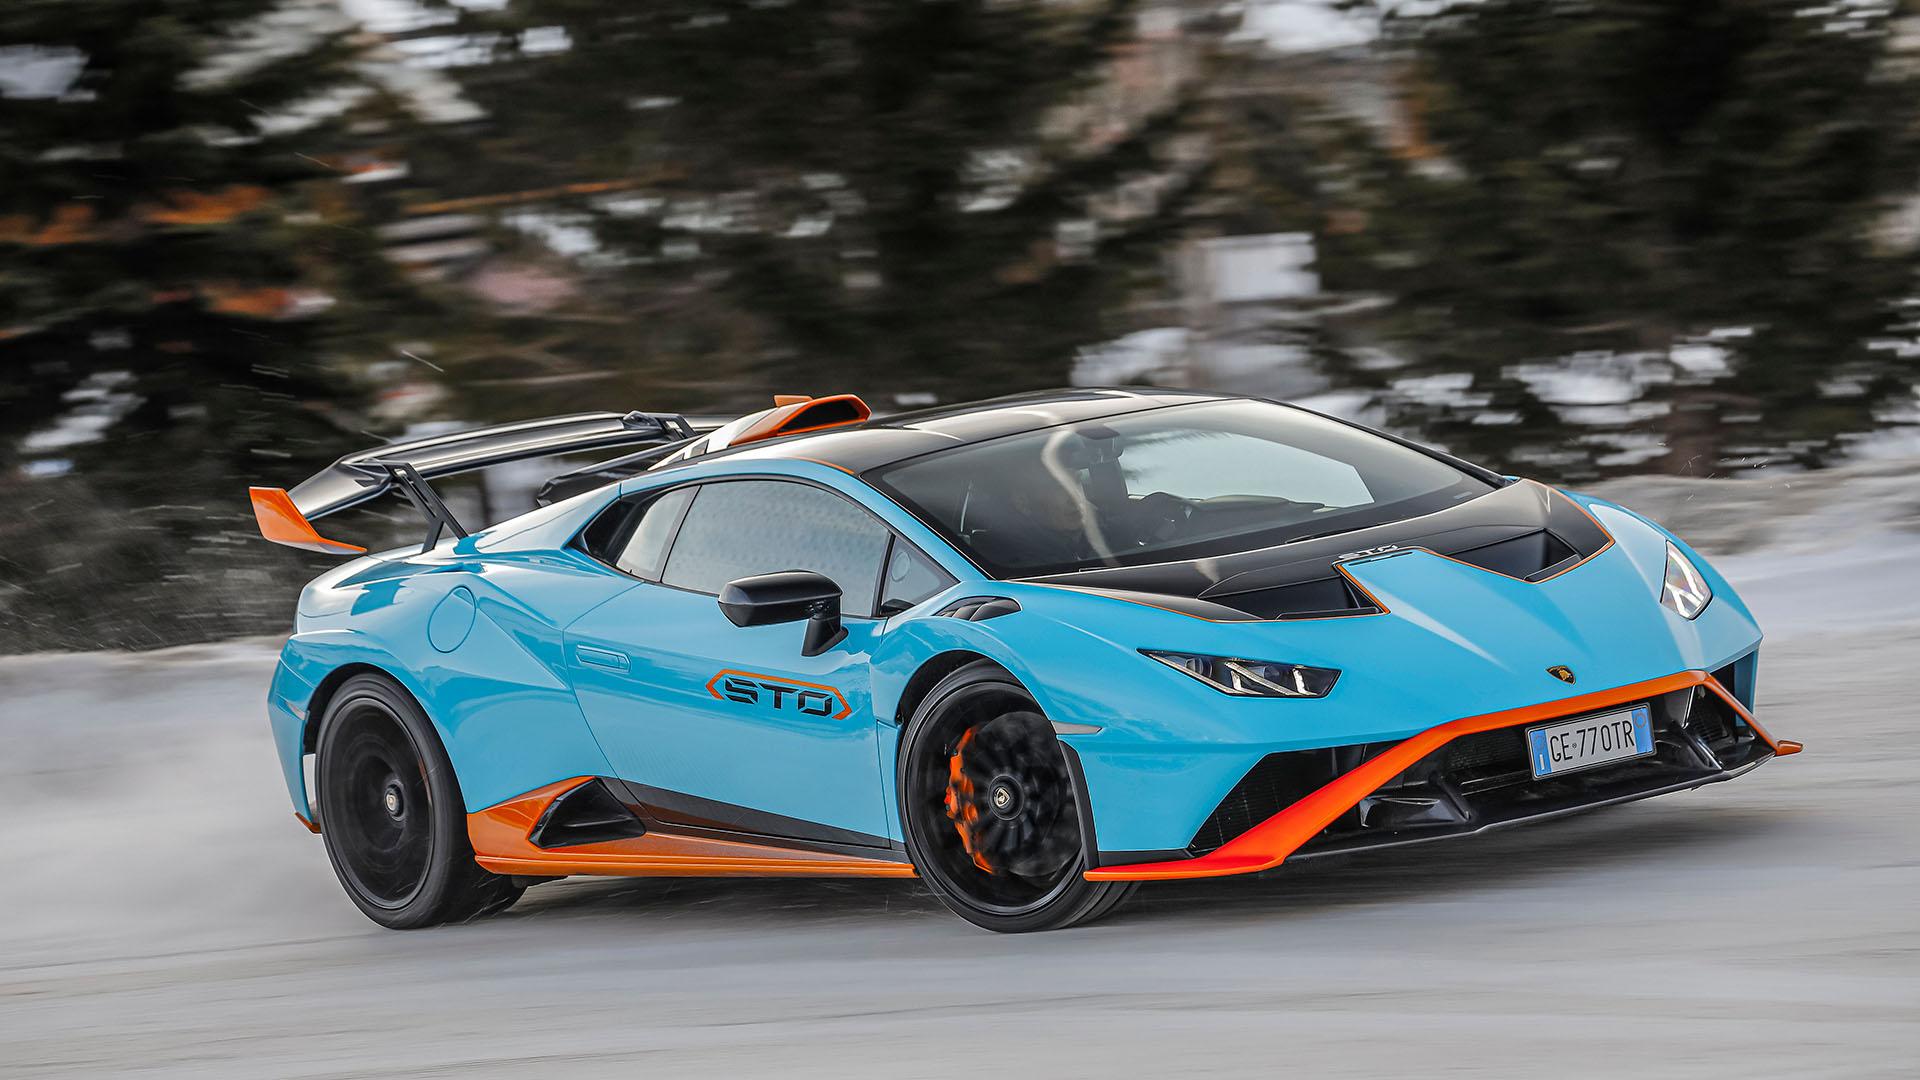 2022 Lamborghini in winter drive 29